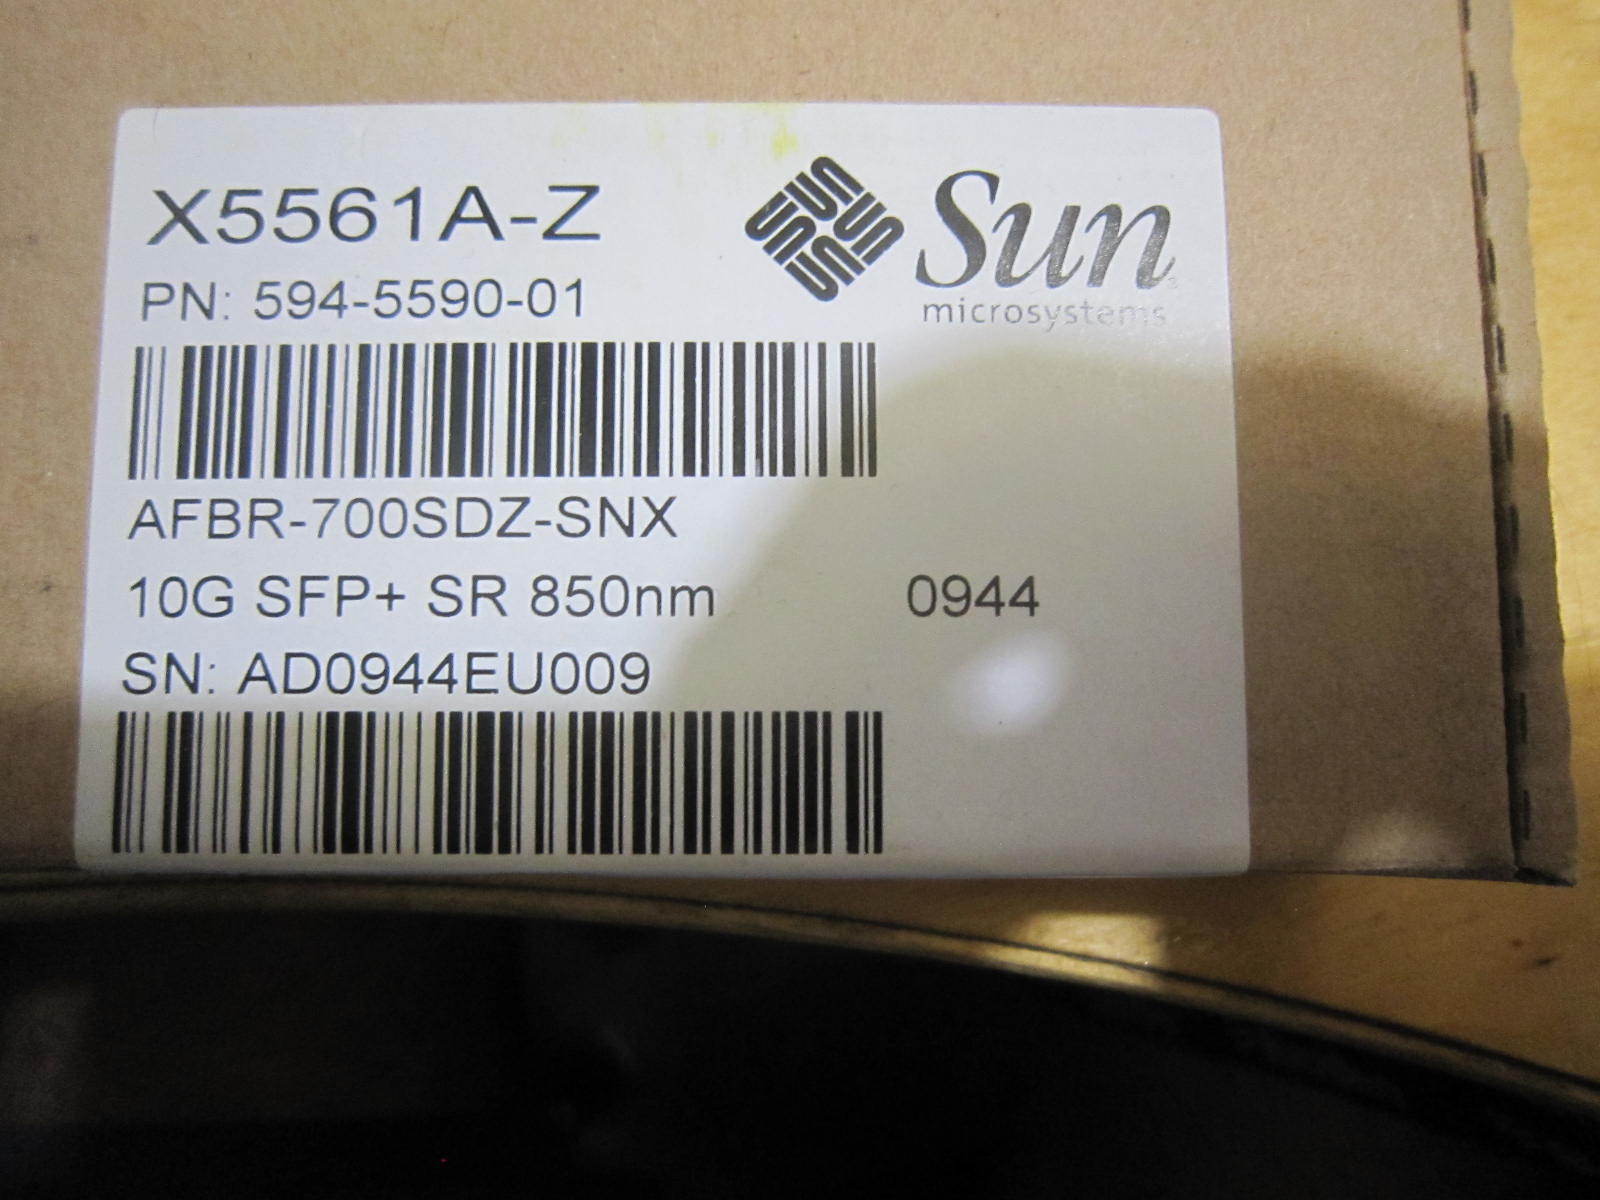 BRAND NEW Sun Microsystems 10G SFP+ SR 850nm transceiver, X5561A-Z 